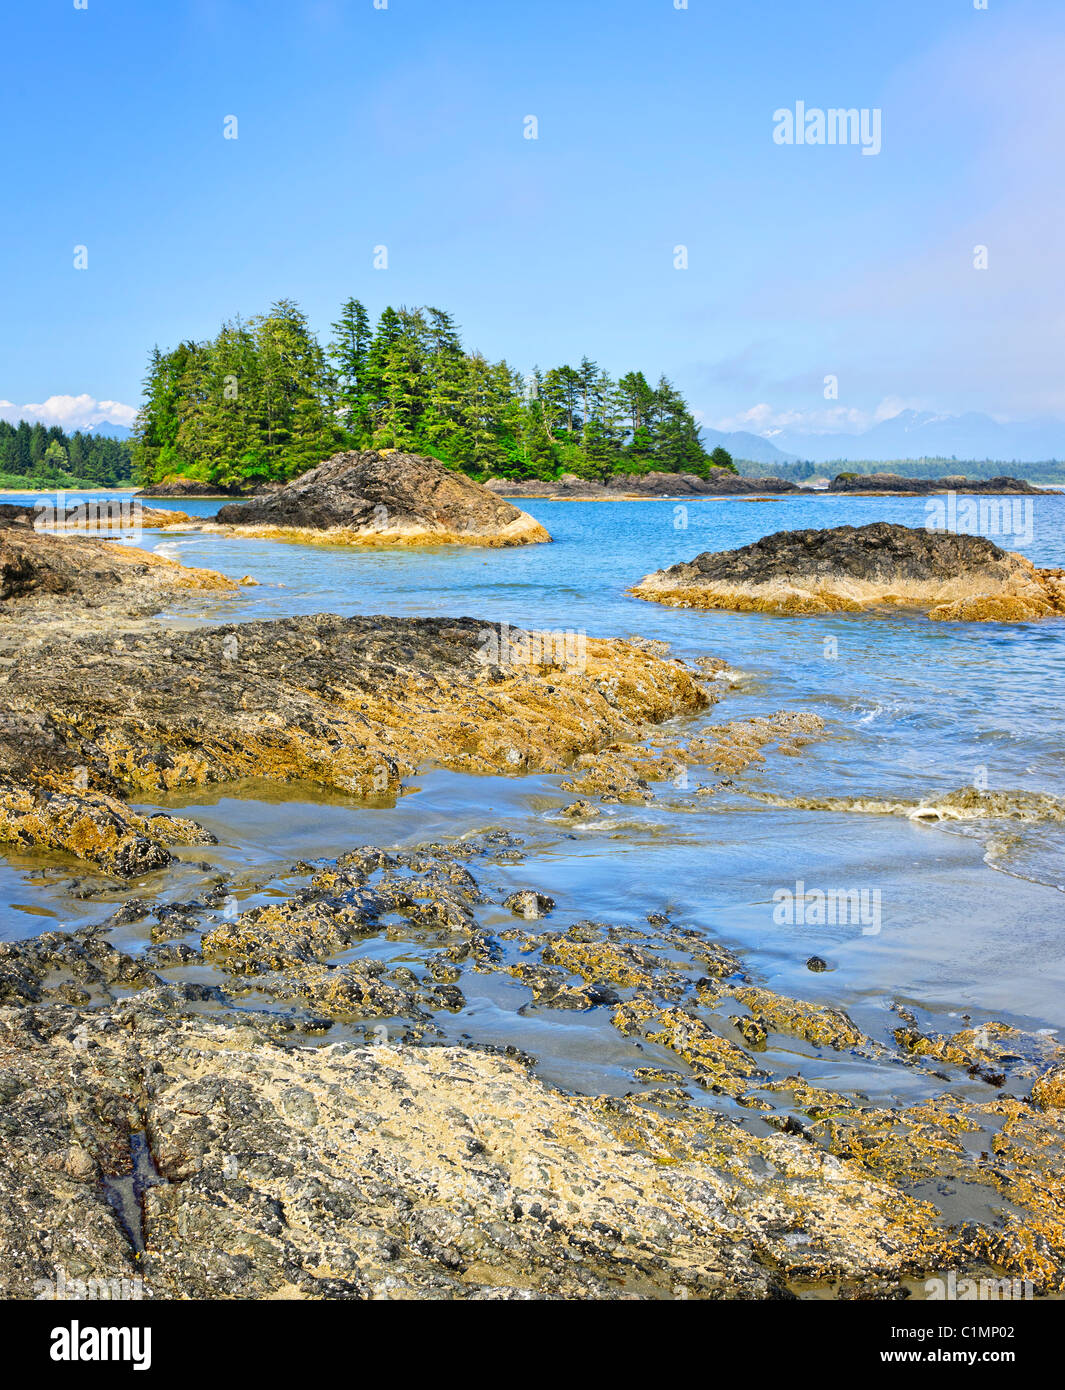 Rocky ocean shore dans le parc national Pacific Rim, Canada Banque D'Images